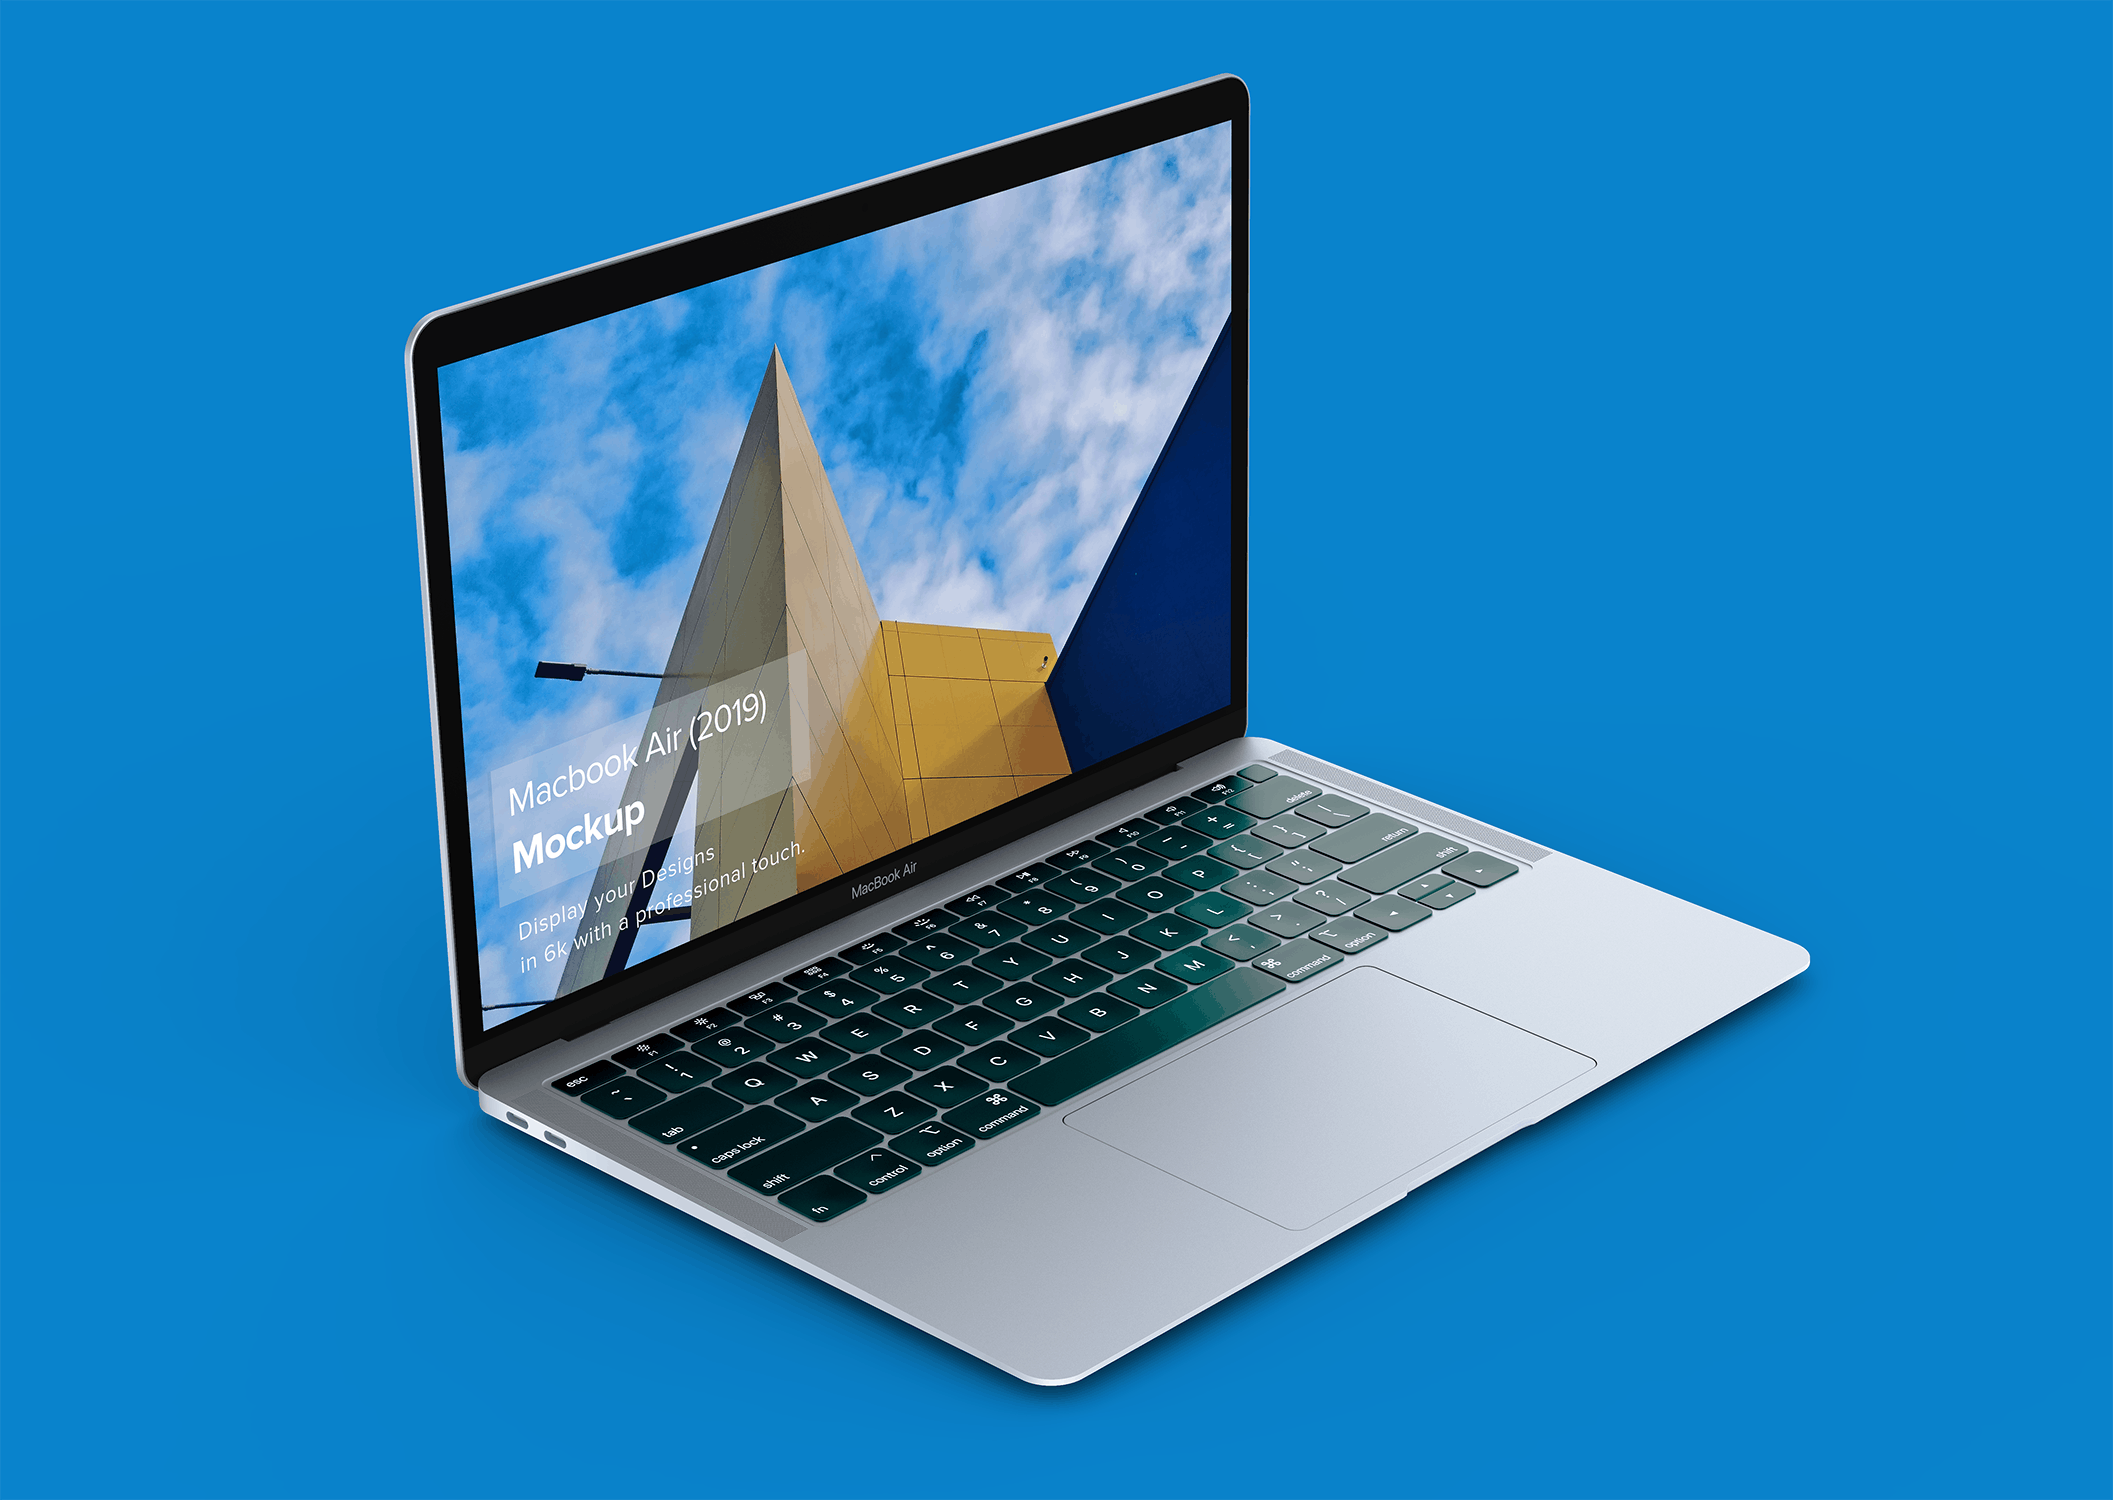 4K高清分辨率苹果超极本电脑MacBook Air样机 Macbook Air Mockup插图(1)